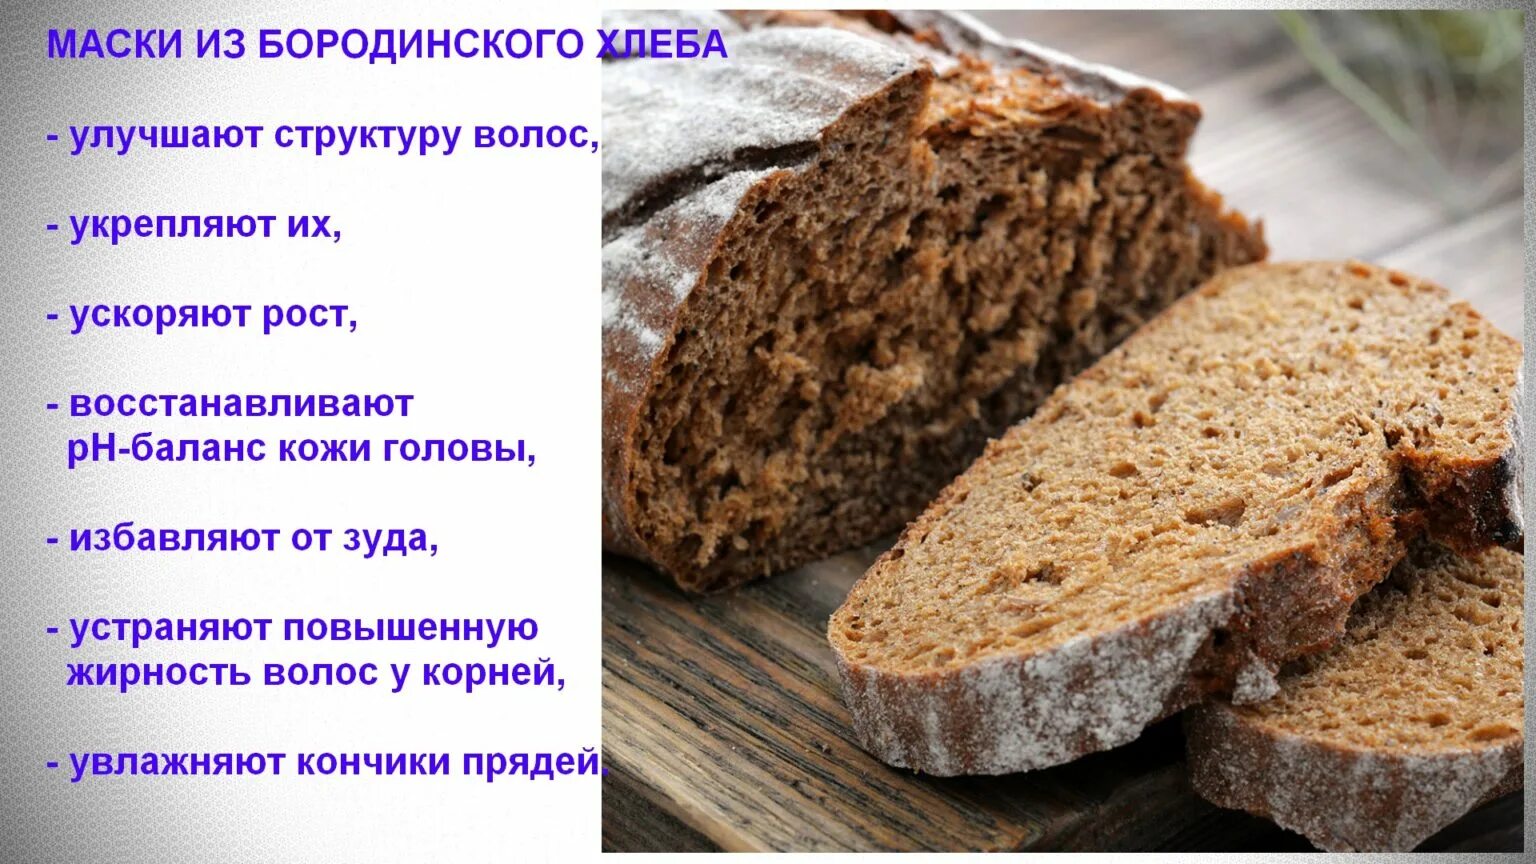 Можно кормить черным хлебом